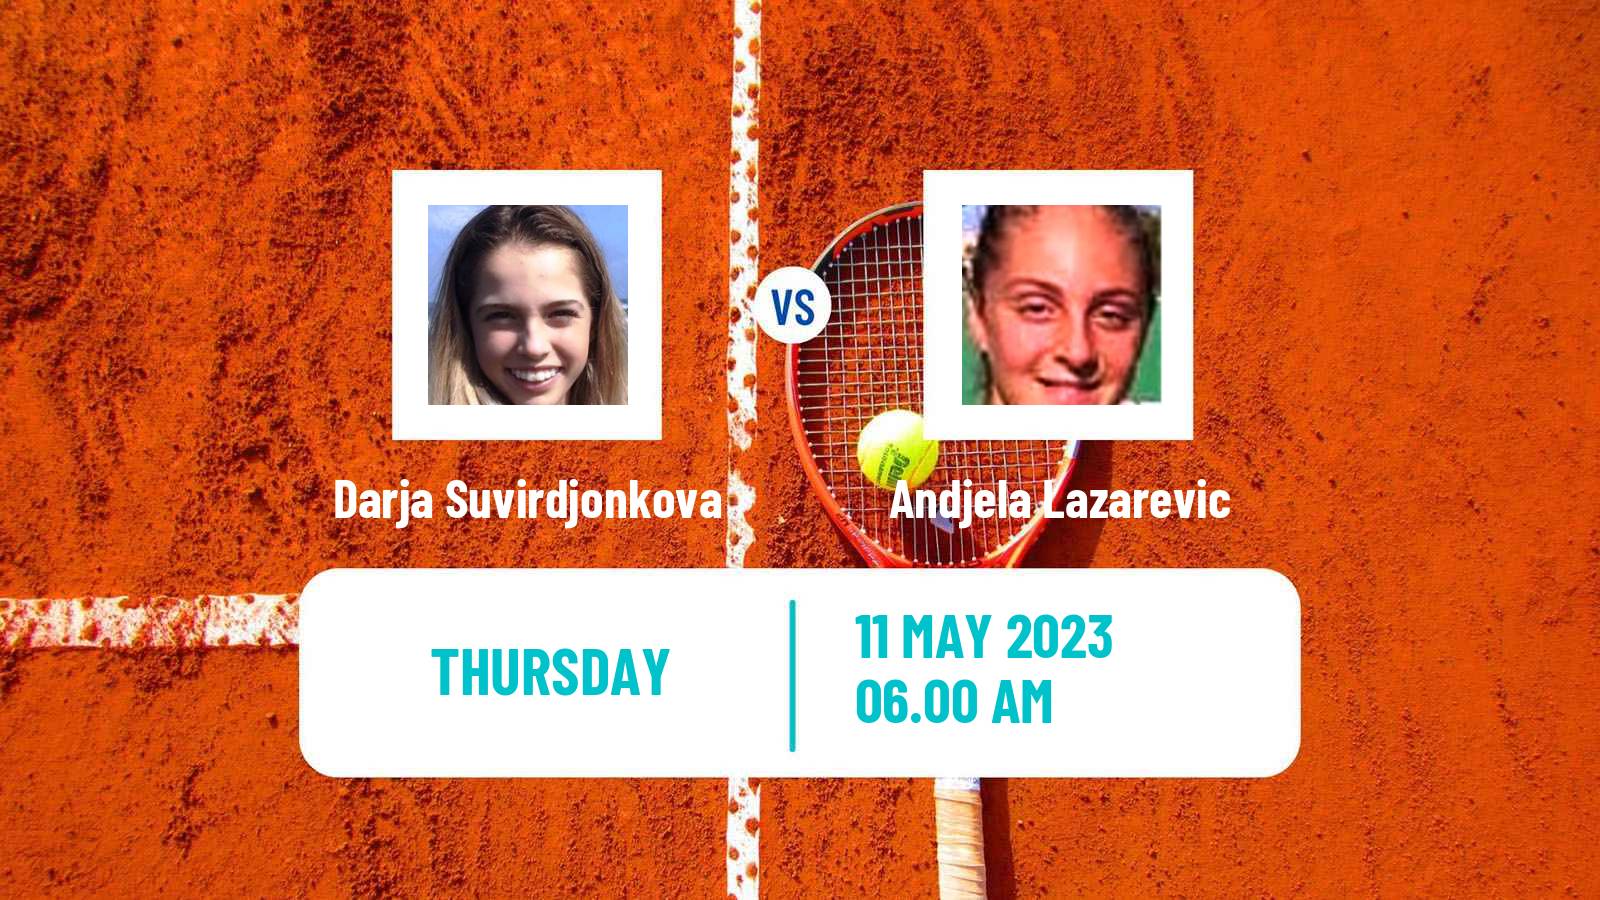 Tennis ITF Tournaments Darja Suvirdjonkova - Andjela Lazarevic